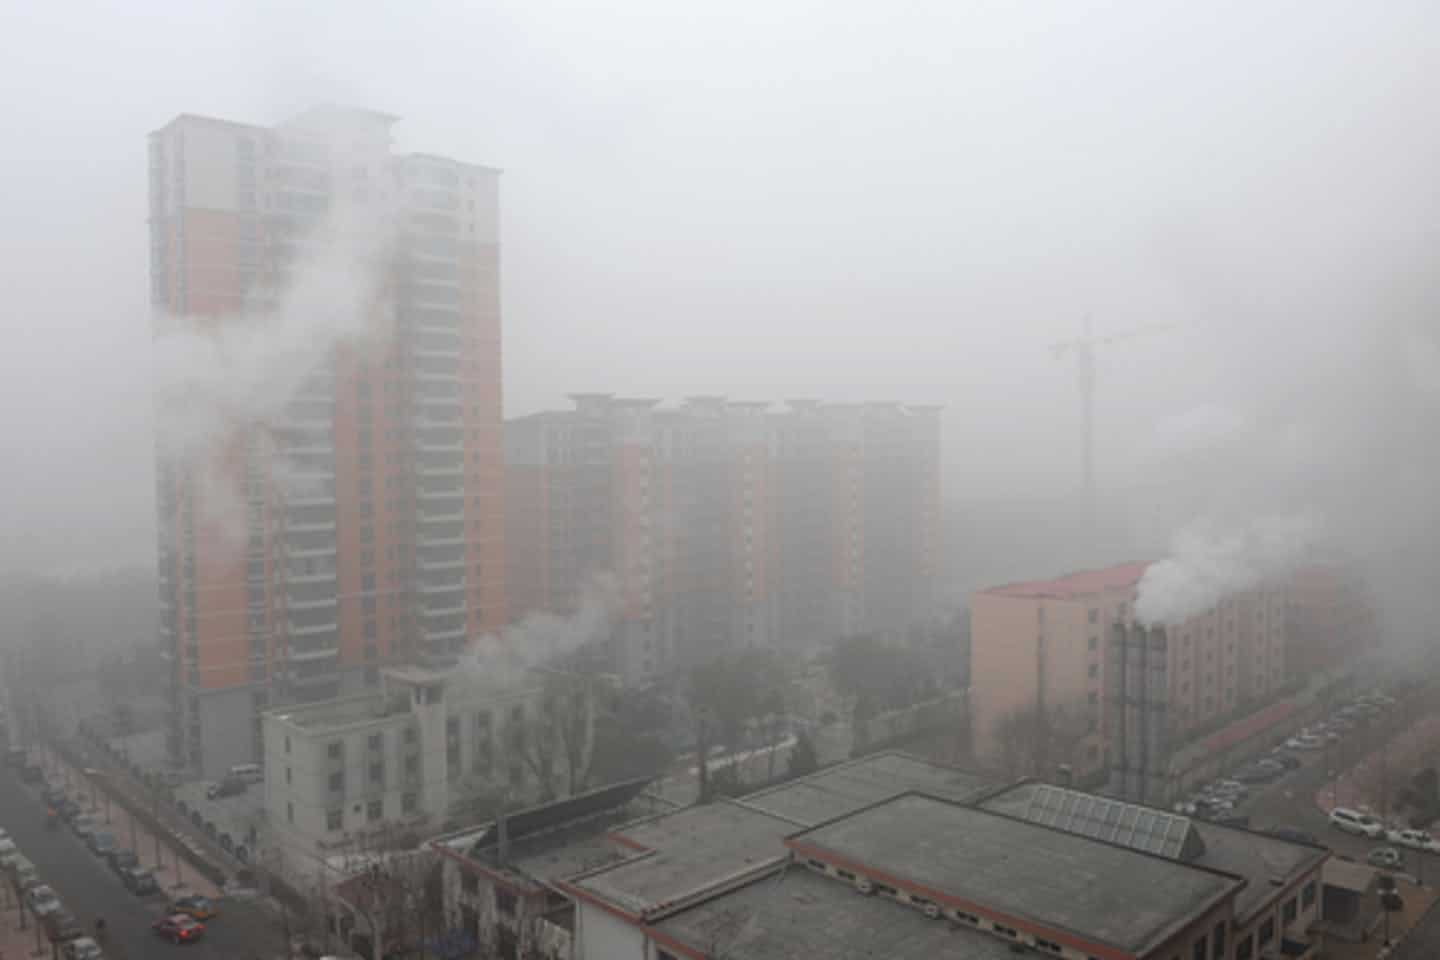 Operaciones petroleras en Venezuela confirman a China como el mayor emisor de CO2 del mundo